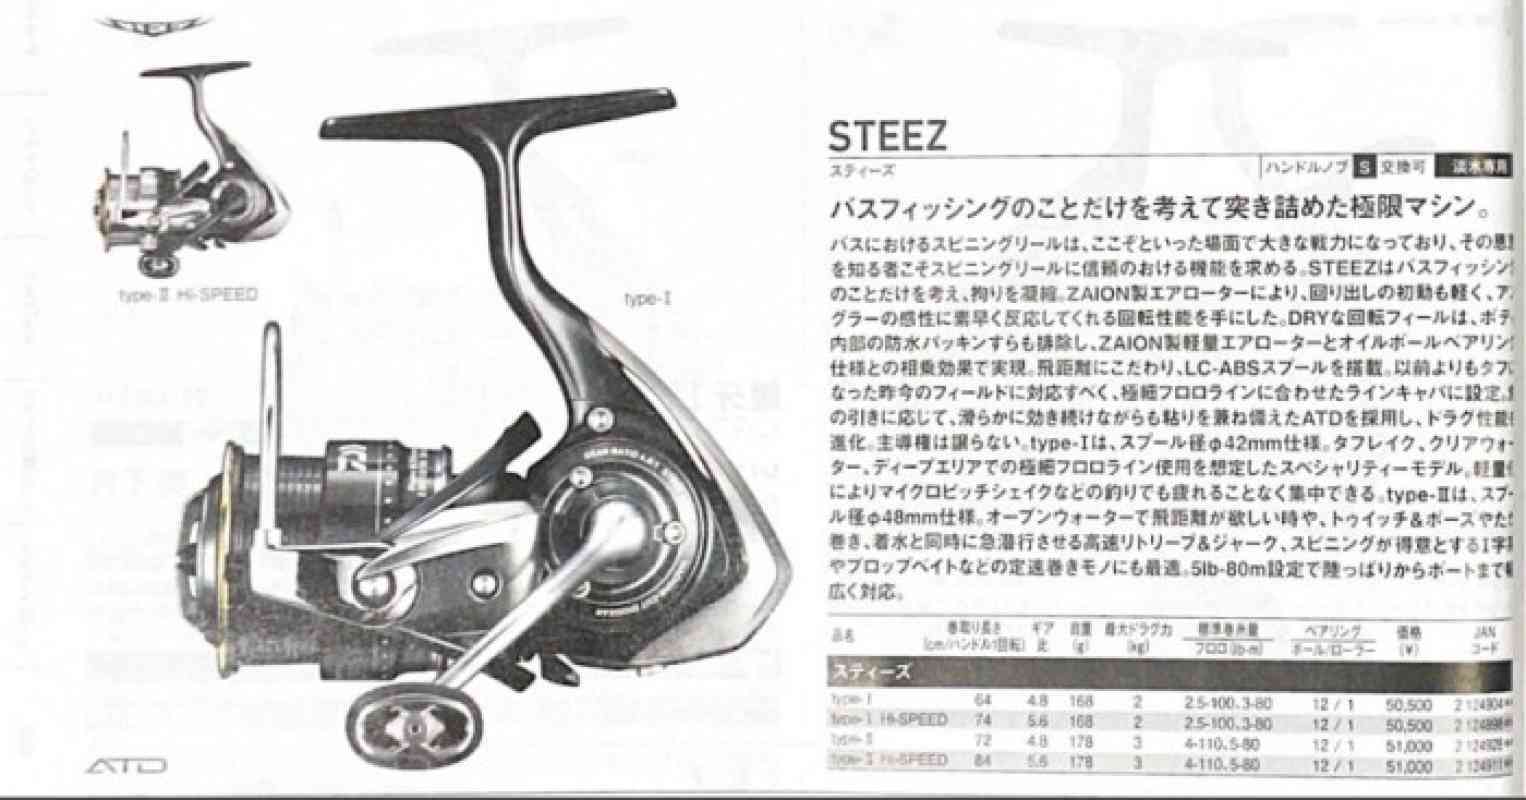 Promo Reel Spinning Daiwa Steez Type Hi Speed Diskon % di